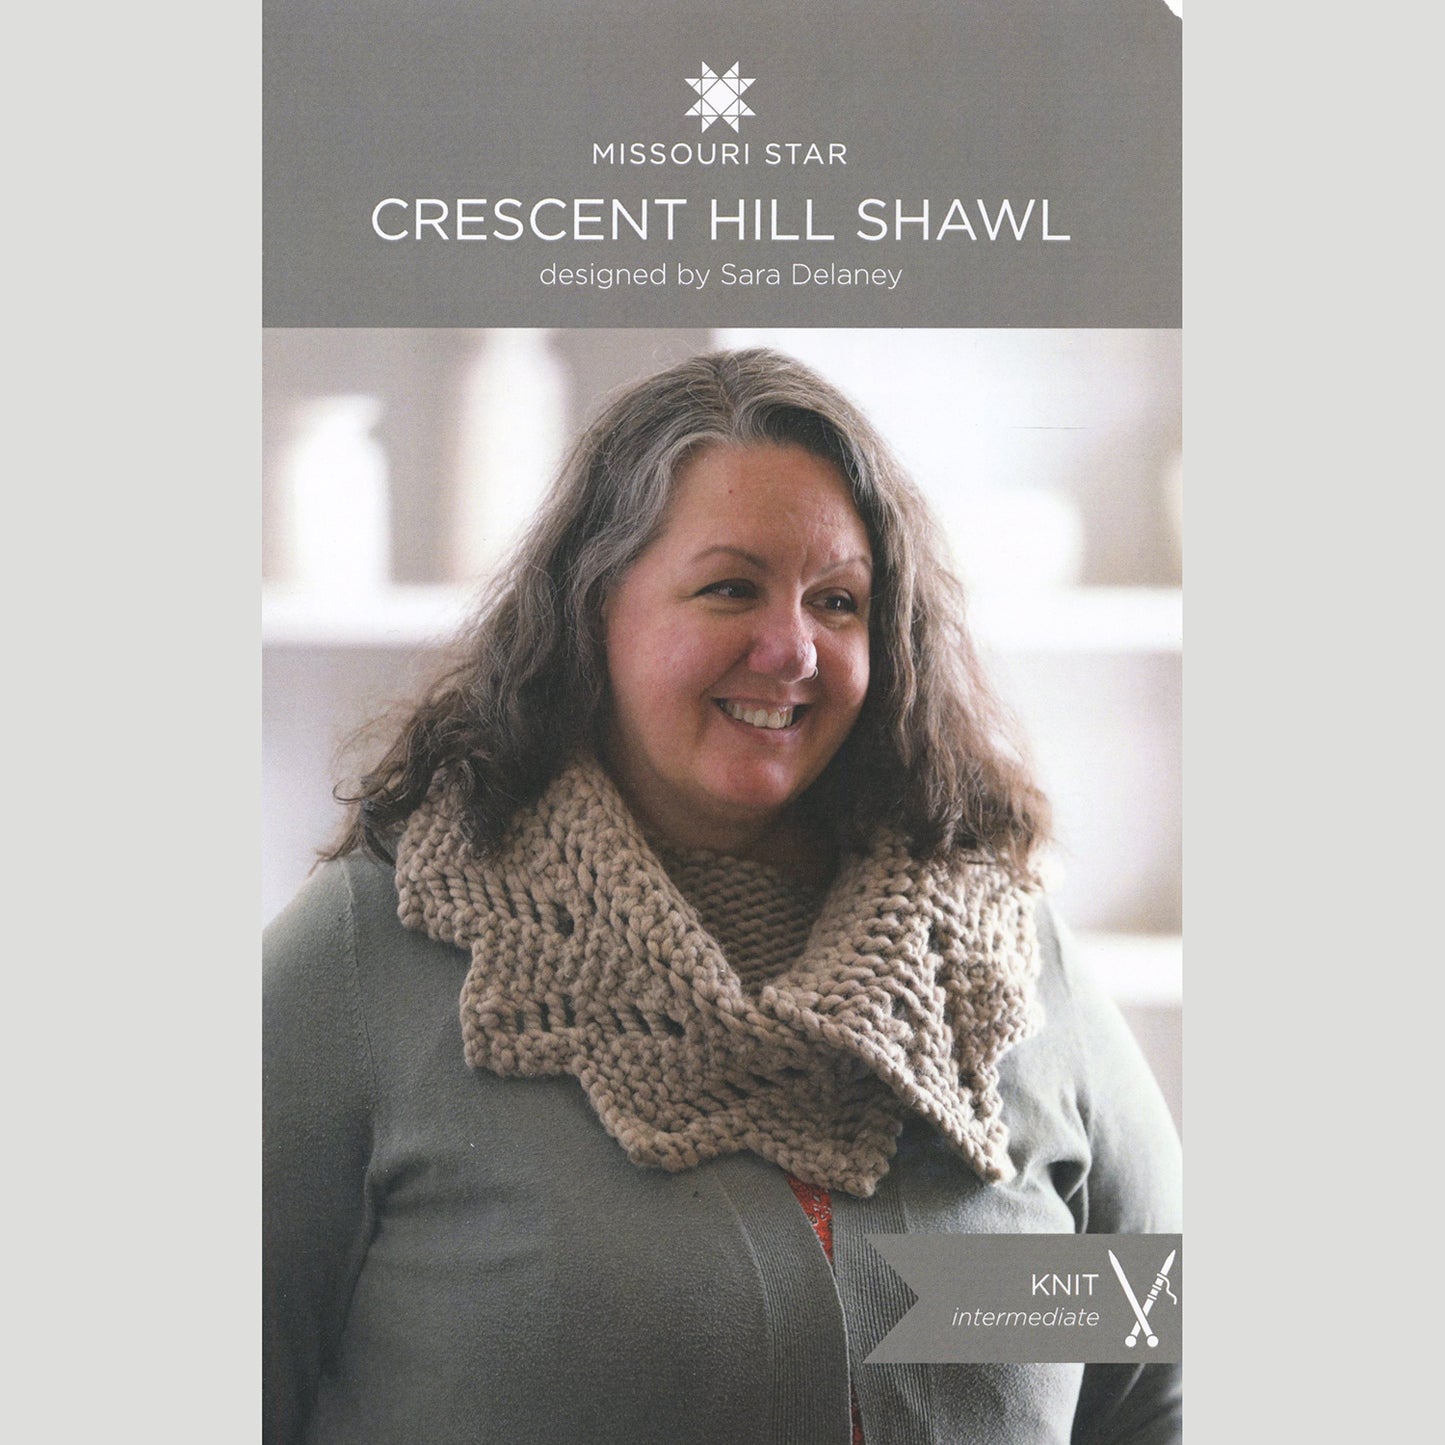 Crescent Hill Shawl Knit Kit - Ecru Alternative View #2